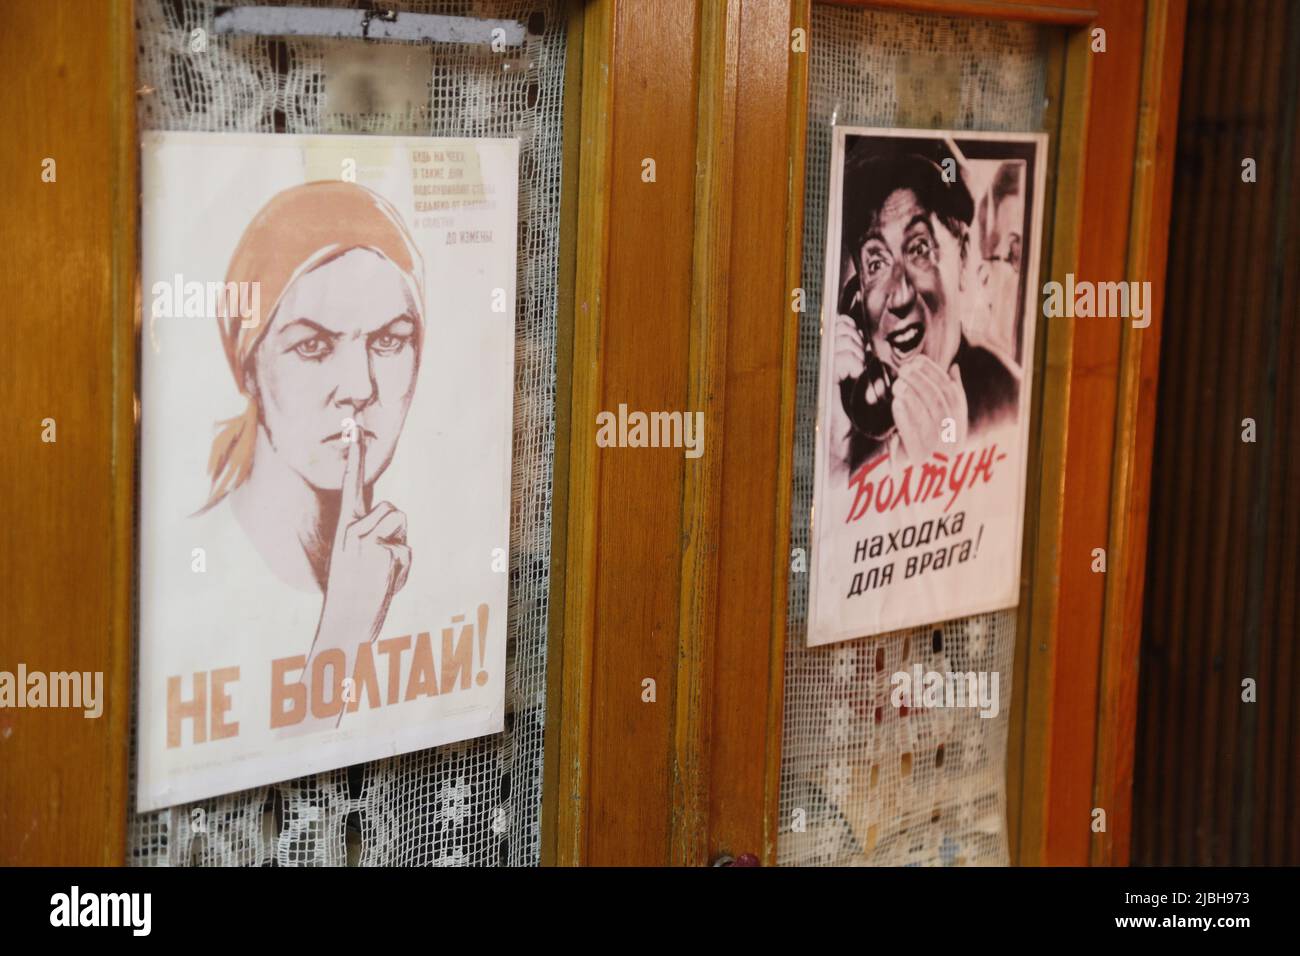 Plakate mit sowjetischer Propaganda: 'не болтай!' (Nicht plaudern!) Und 'Болтун - находка для врага!' (Eine Chatterbox ist ein echter Gewinn für den Feind!) Stockfoto